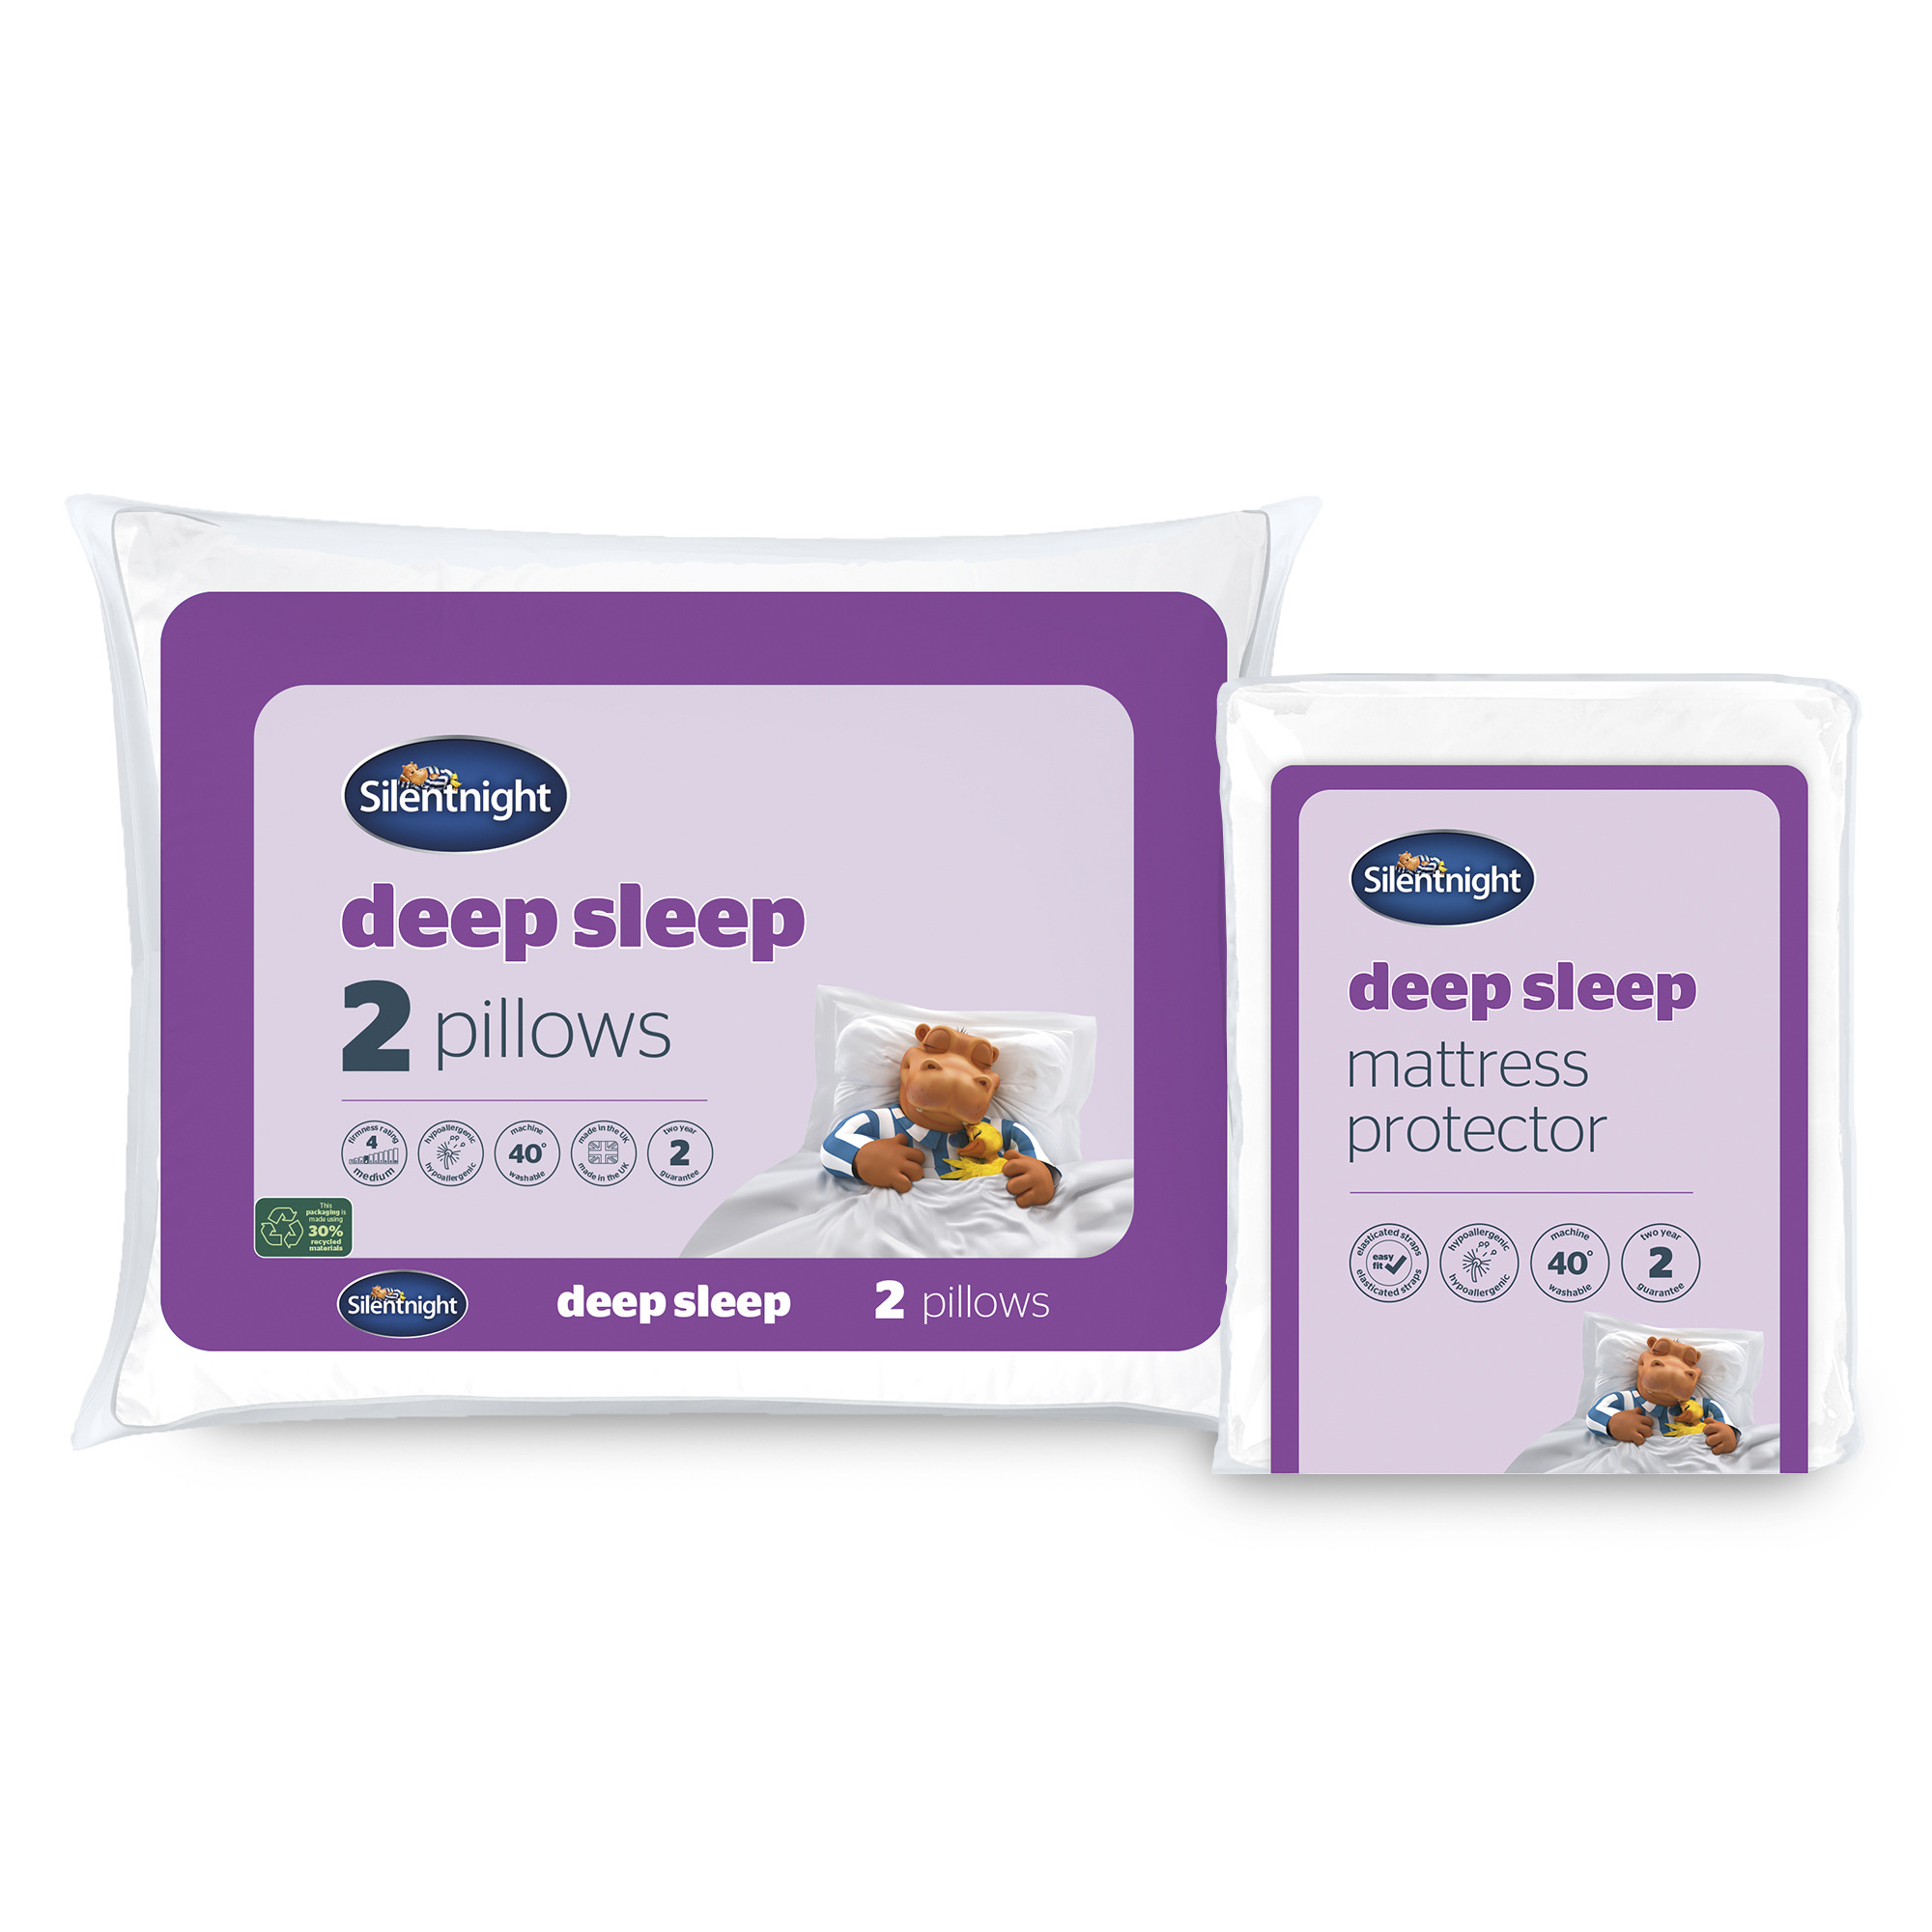 Silentnight Deep Sleep Mattress Protector & Pillow Bundle